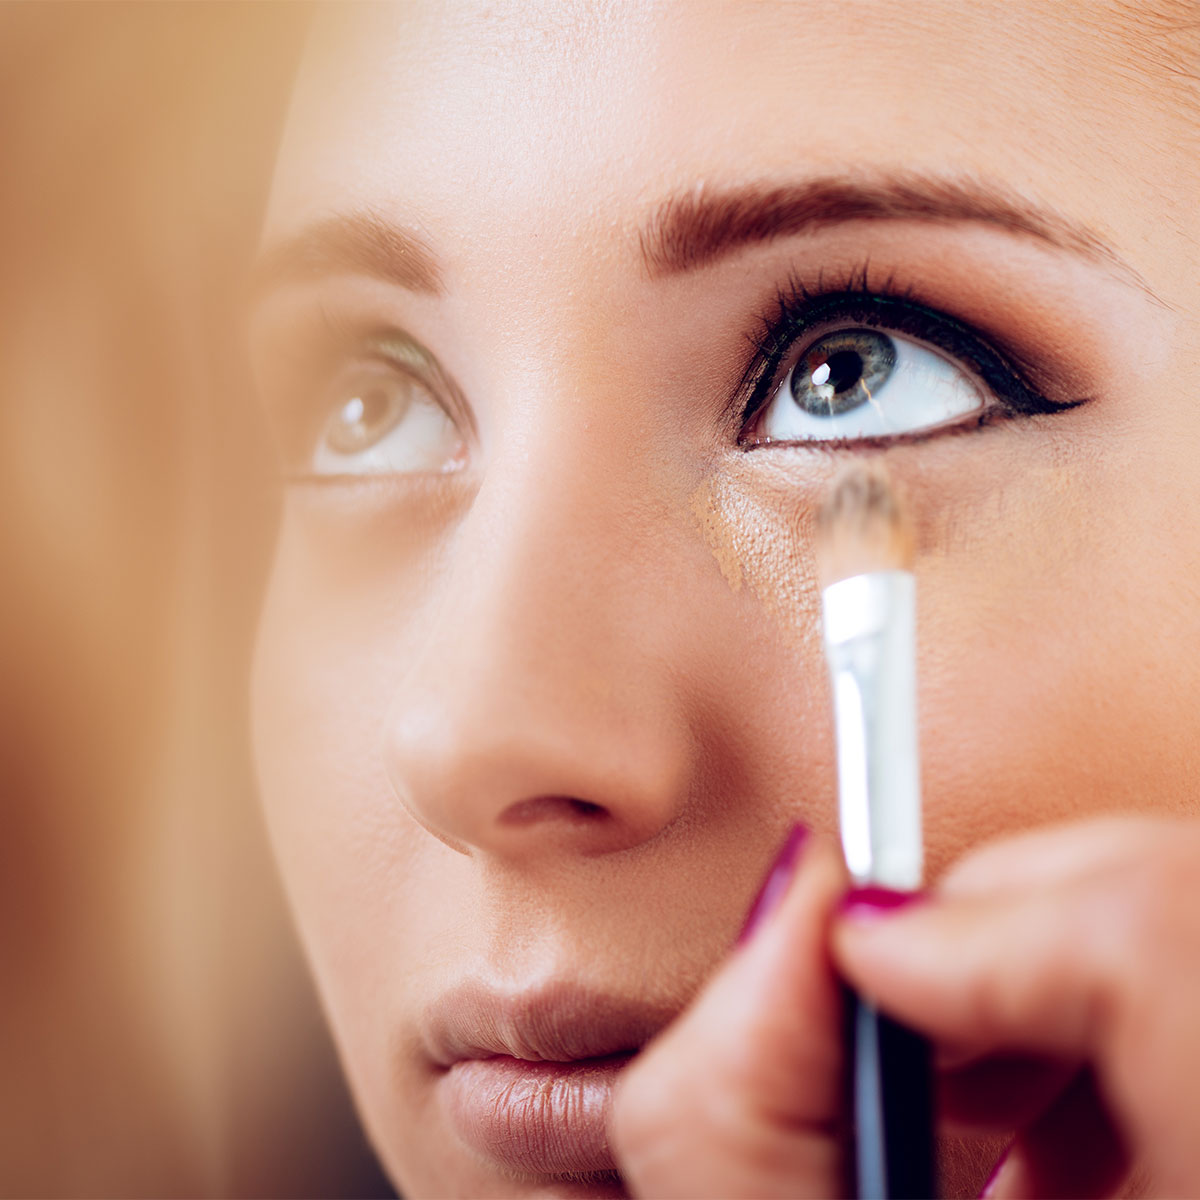 makeup artist applying concealer to model under-eye section